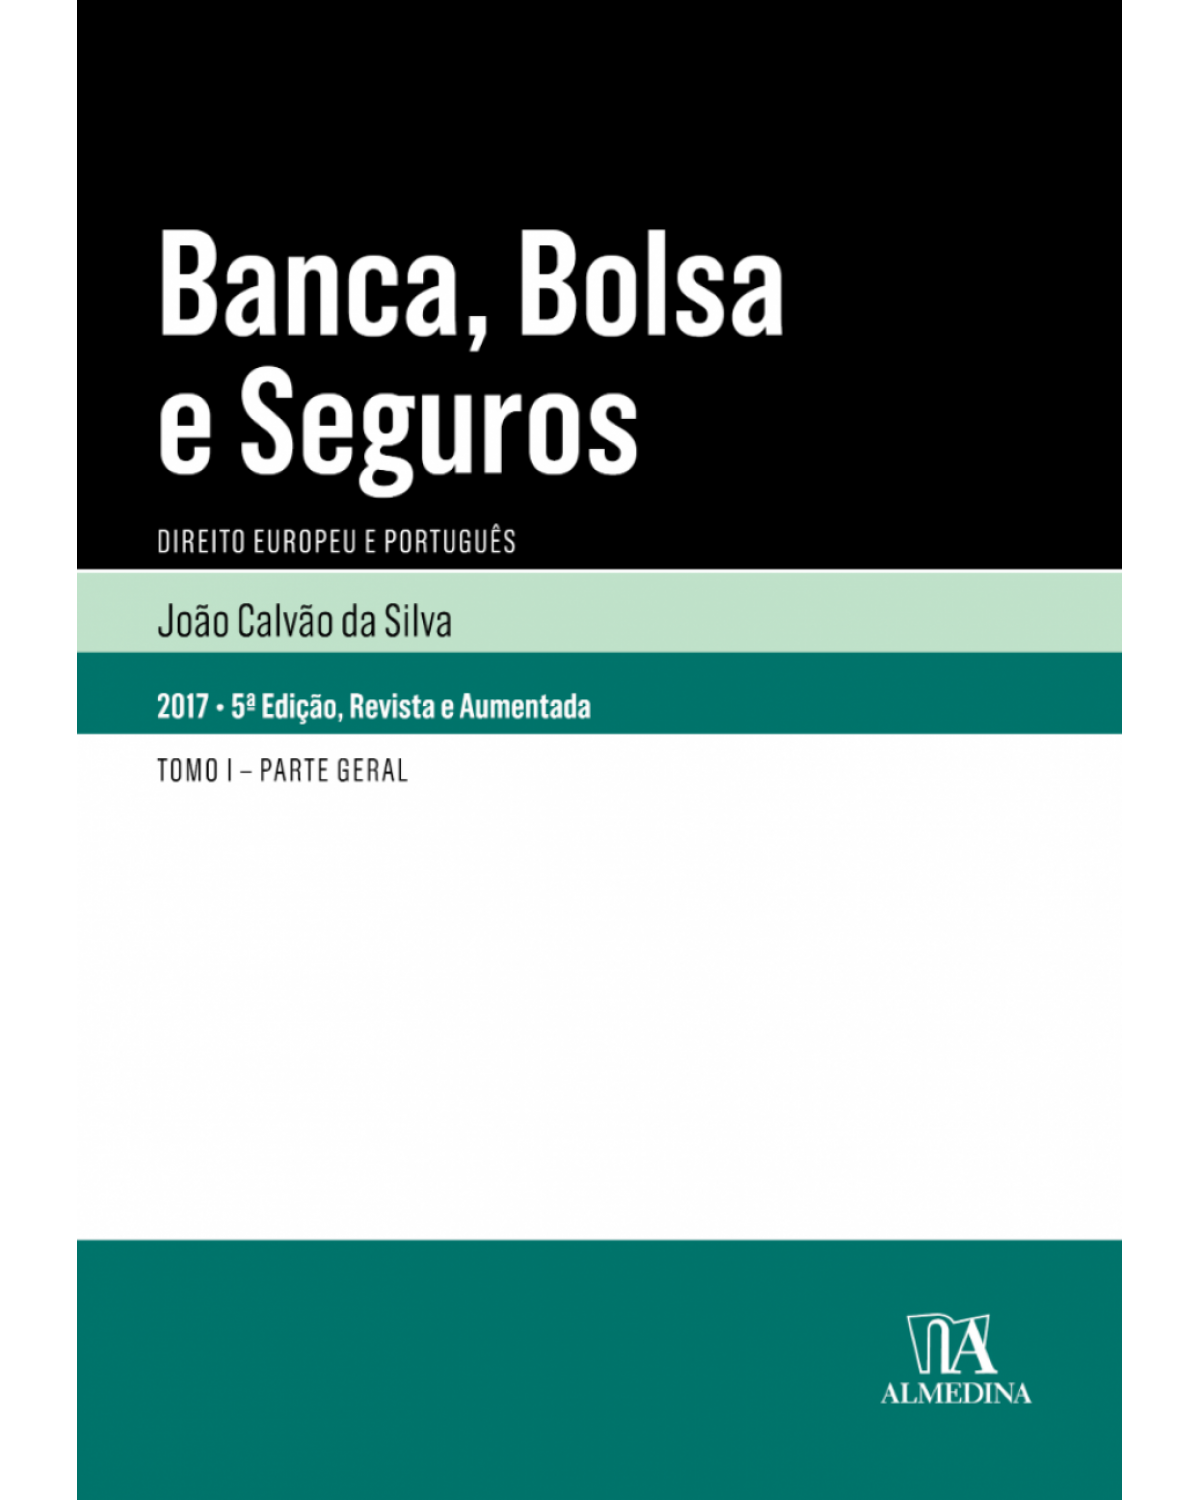 Banca, bolsa e seguros: direito europeu e português - Tomo I - Parte geral - 5ª Edição | 2017